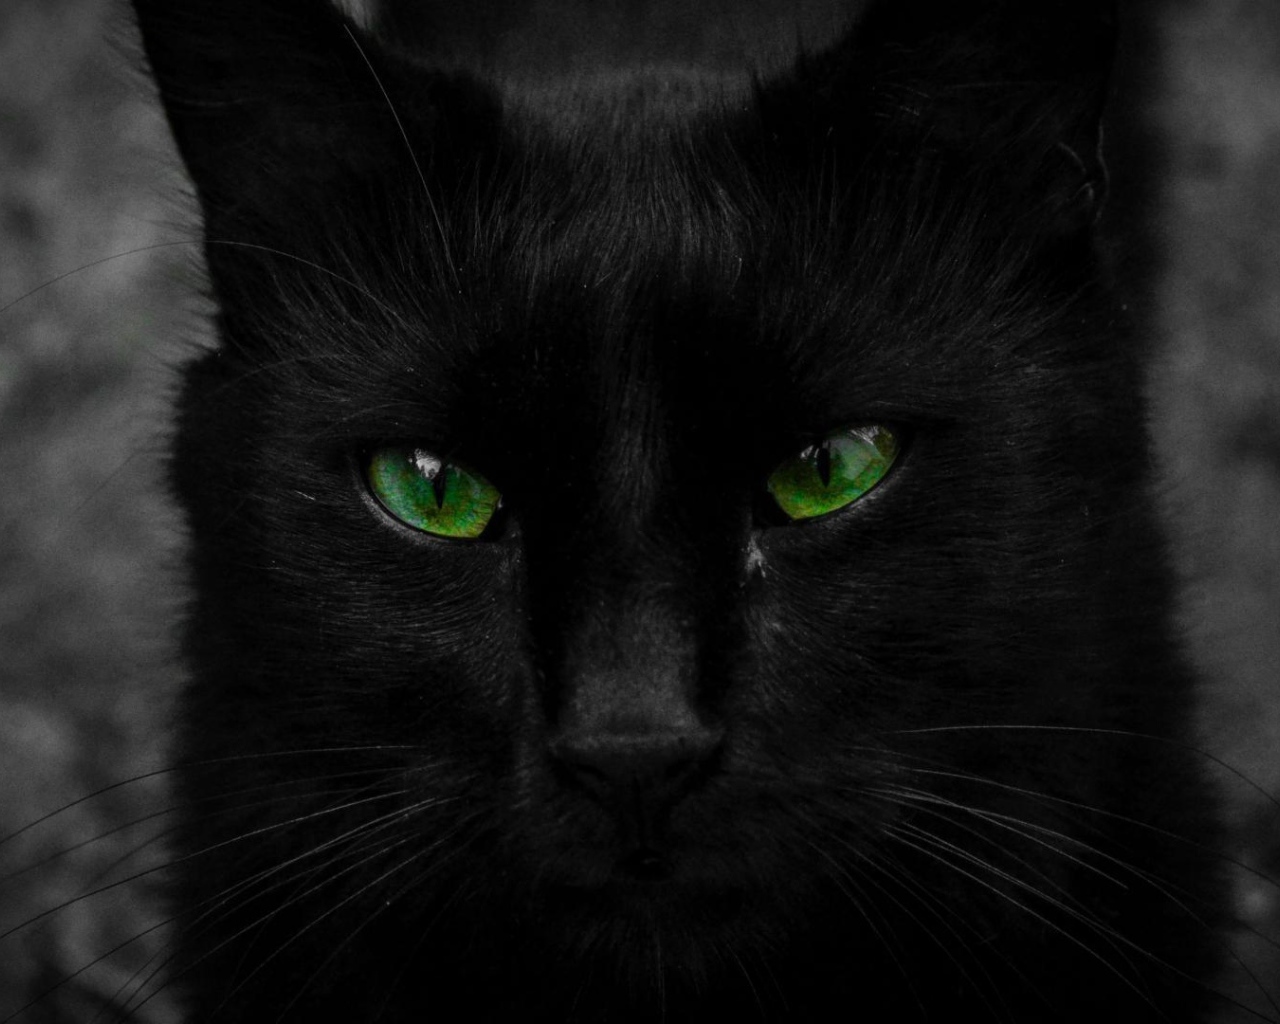 Красивый черный кот с большими зелеными глазами